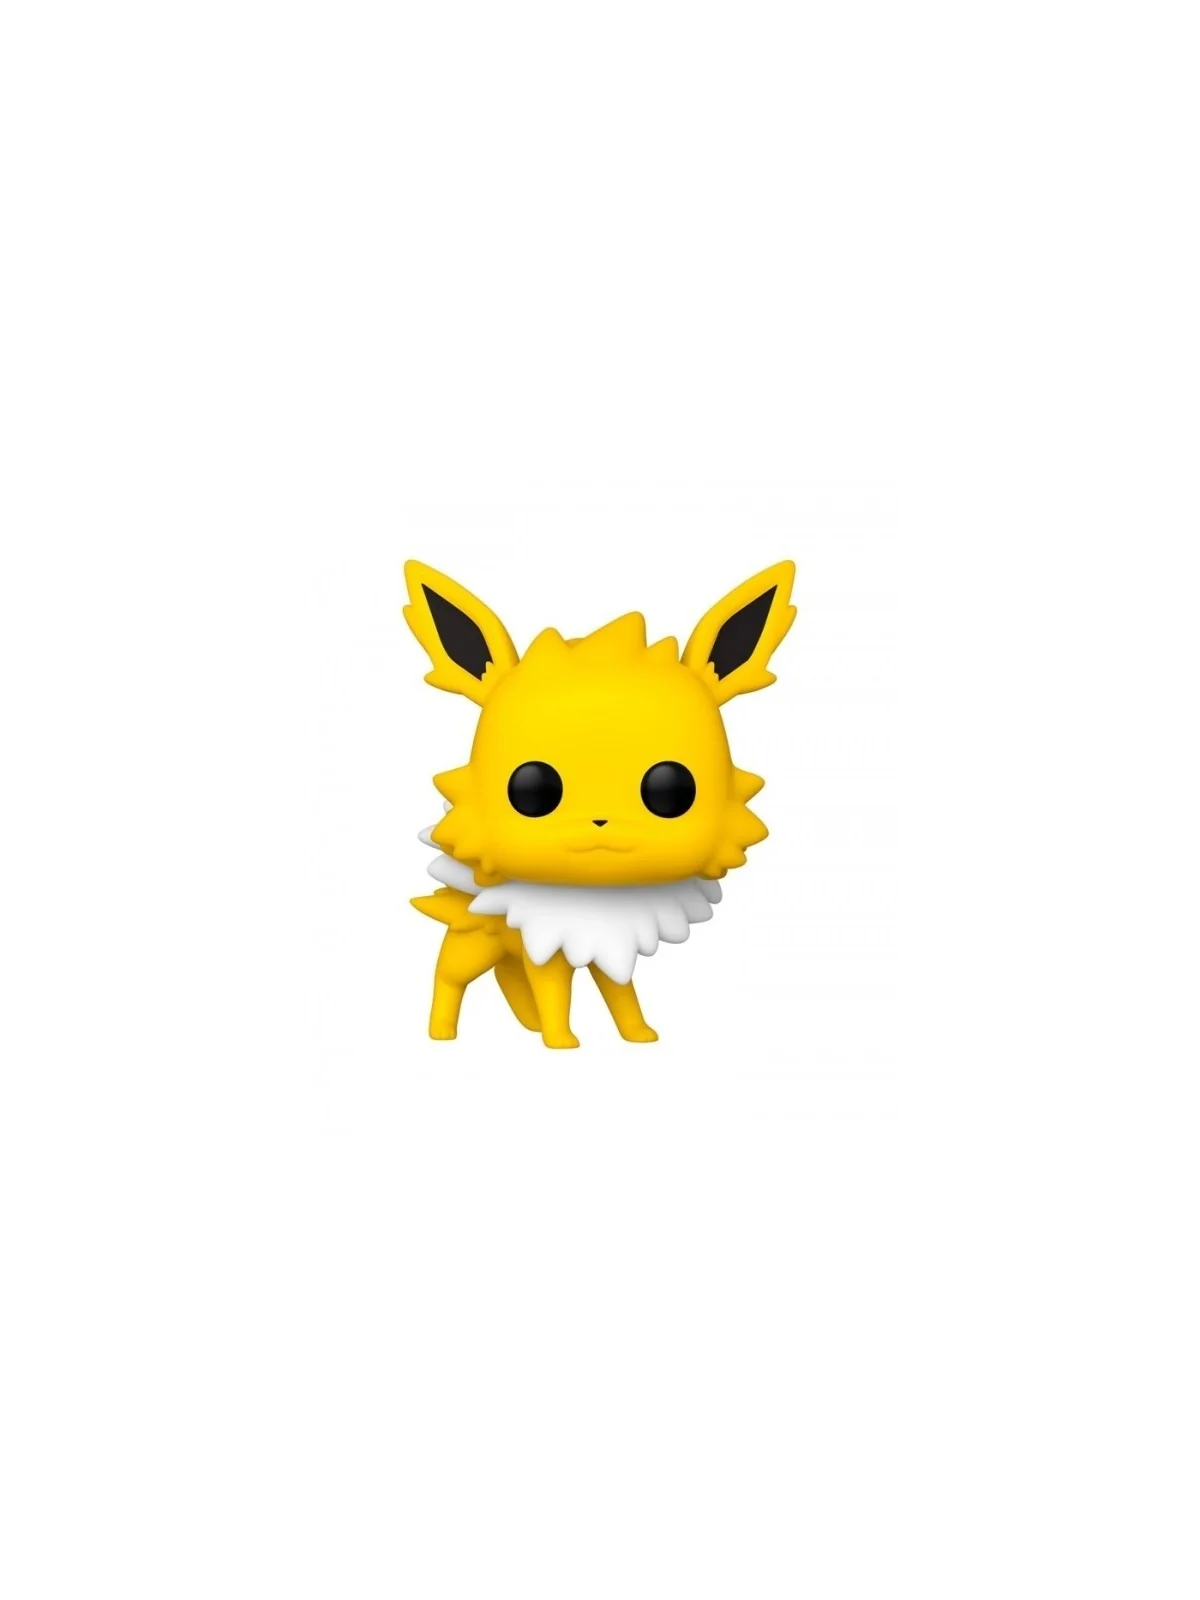 Comprar Funko POP! Jolteon Pokémon (628) barato al mejor precio 17,00 